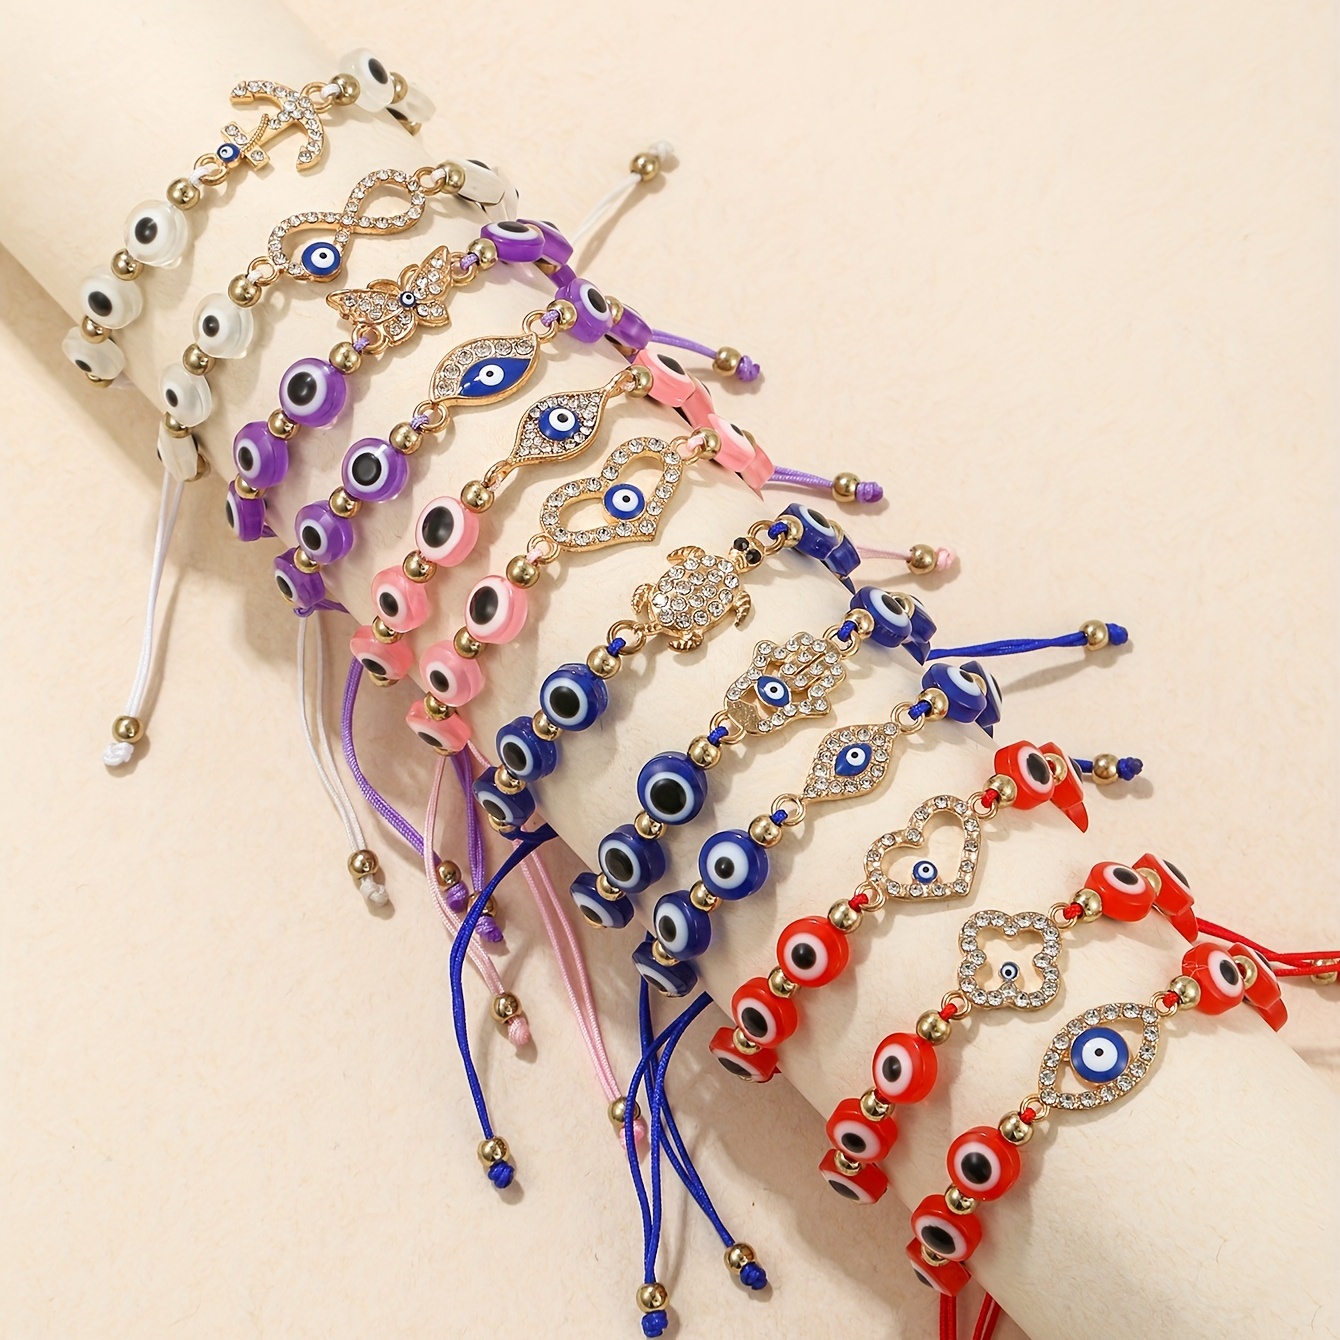 

12pcs Devil's Eye Shape Beads Beaded Braided Bracelet Set Inlaid Shiny Rhinestone